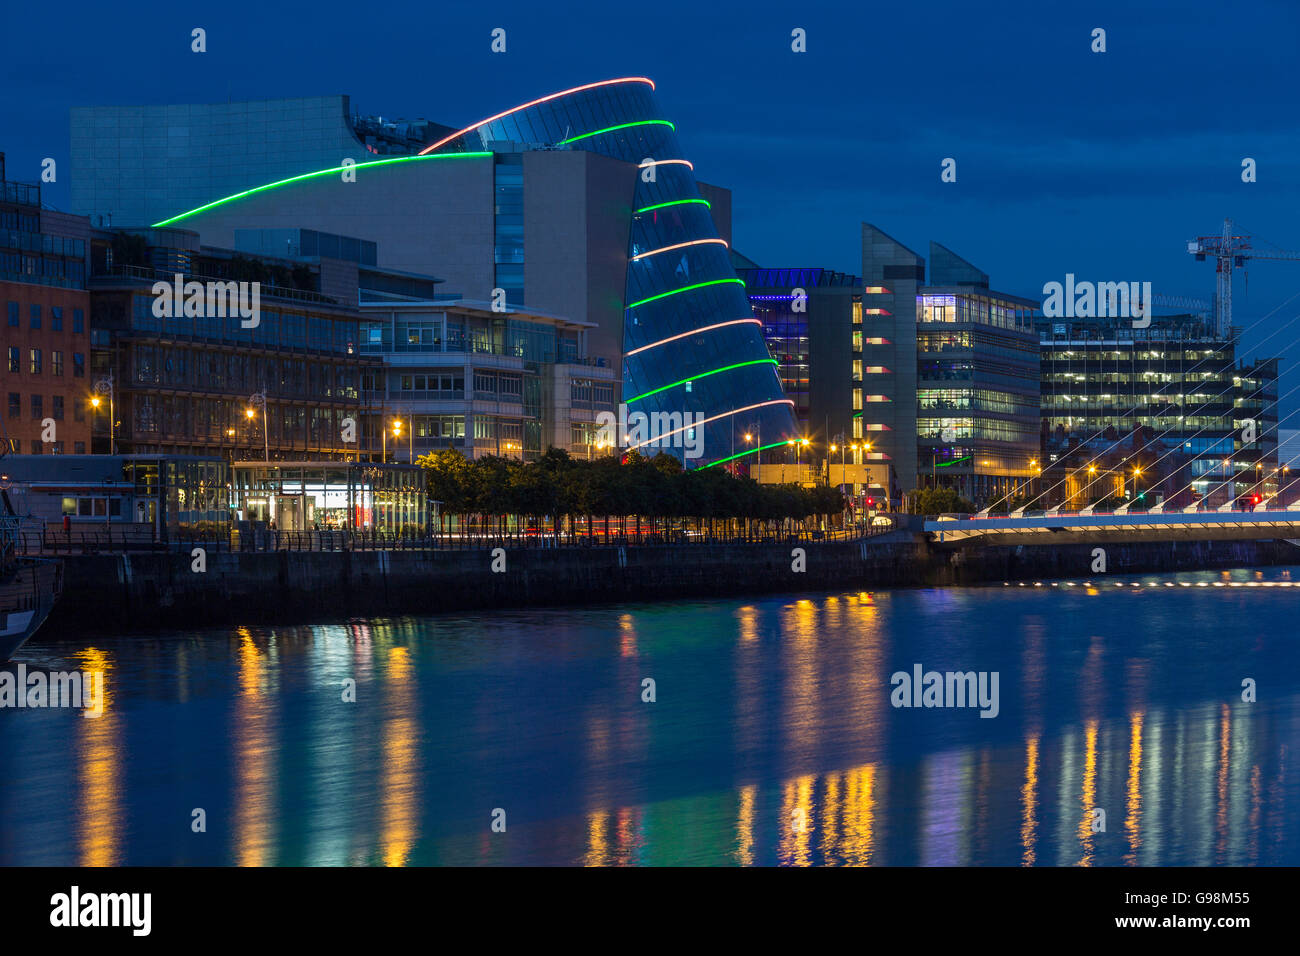 El río Liffey, el Samuel Beckett Bridge y el Centro de Convenciones - Dublín - Irlanda Foto de stock